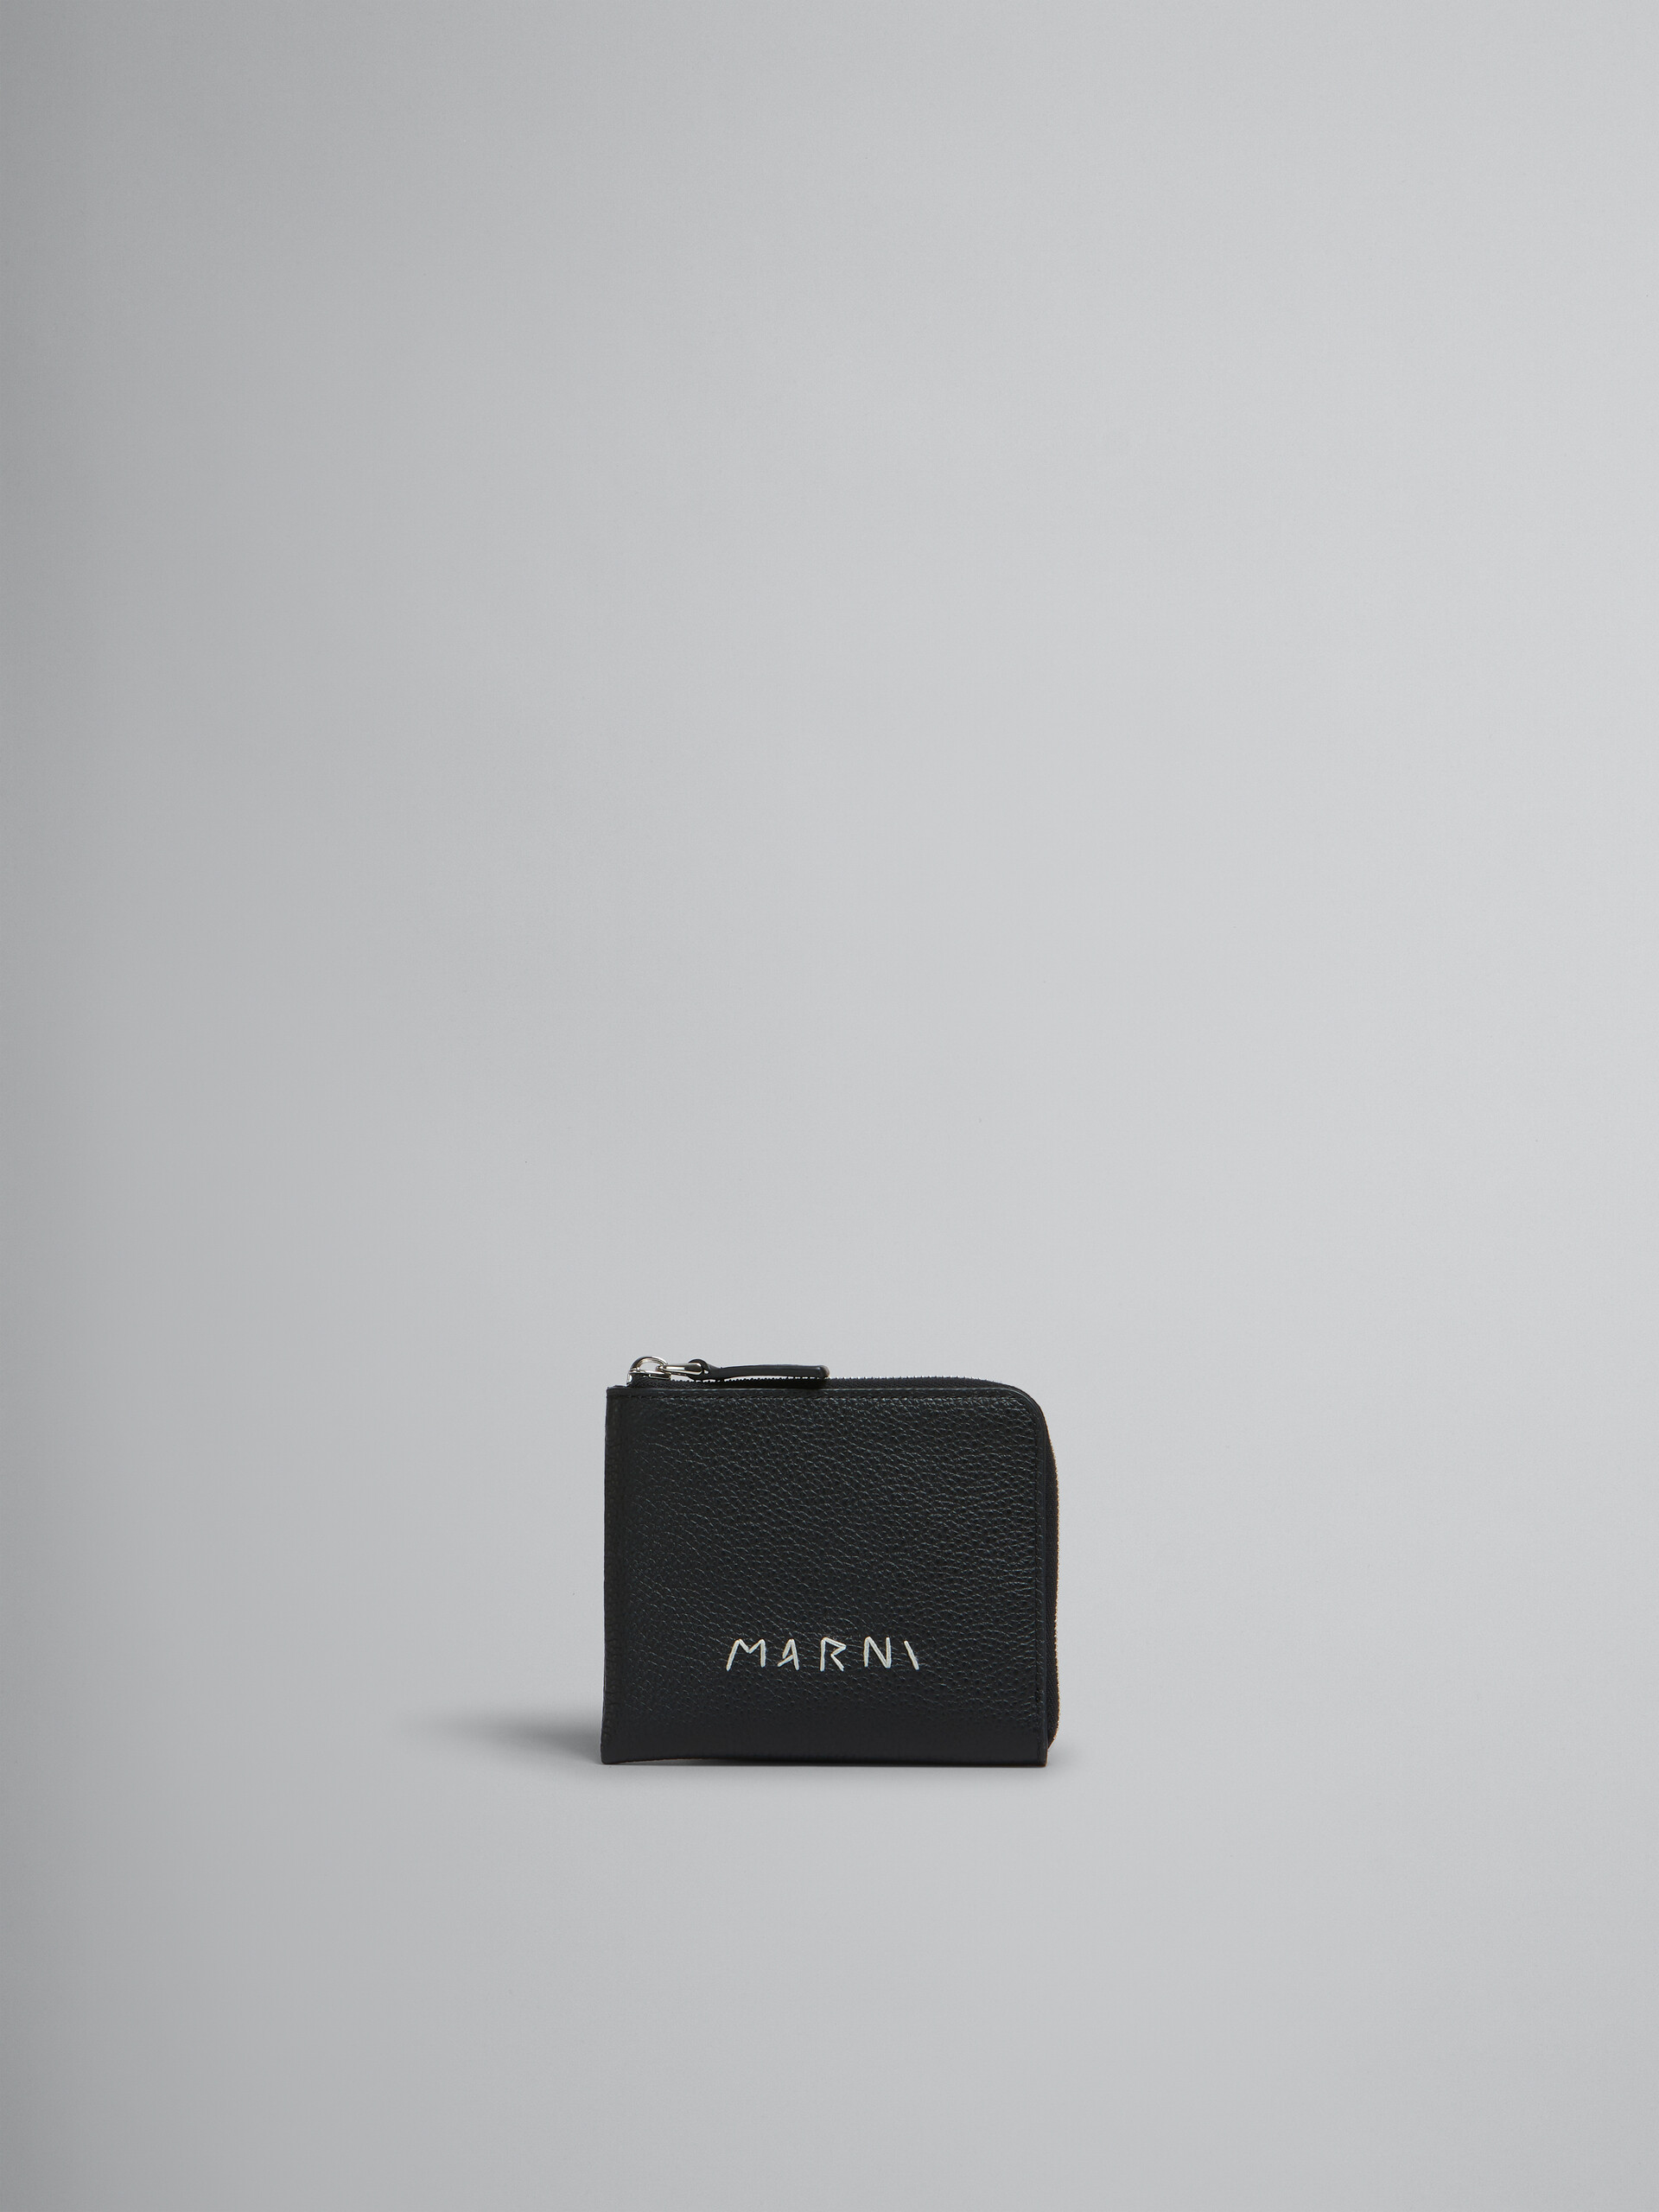 Portefeuille zippé en cuir noir avec effet raccommodé Marni - Portefeuilles - Image 1